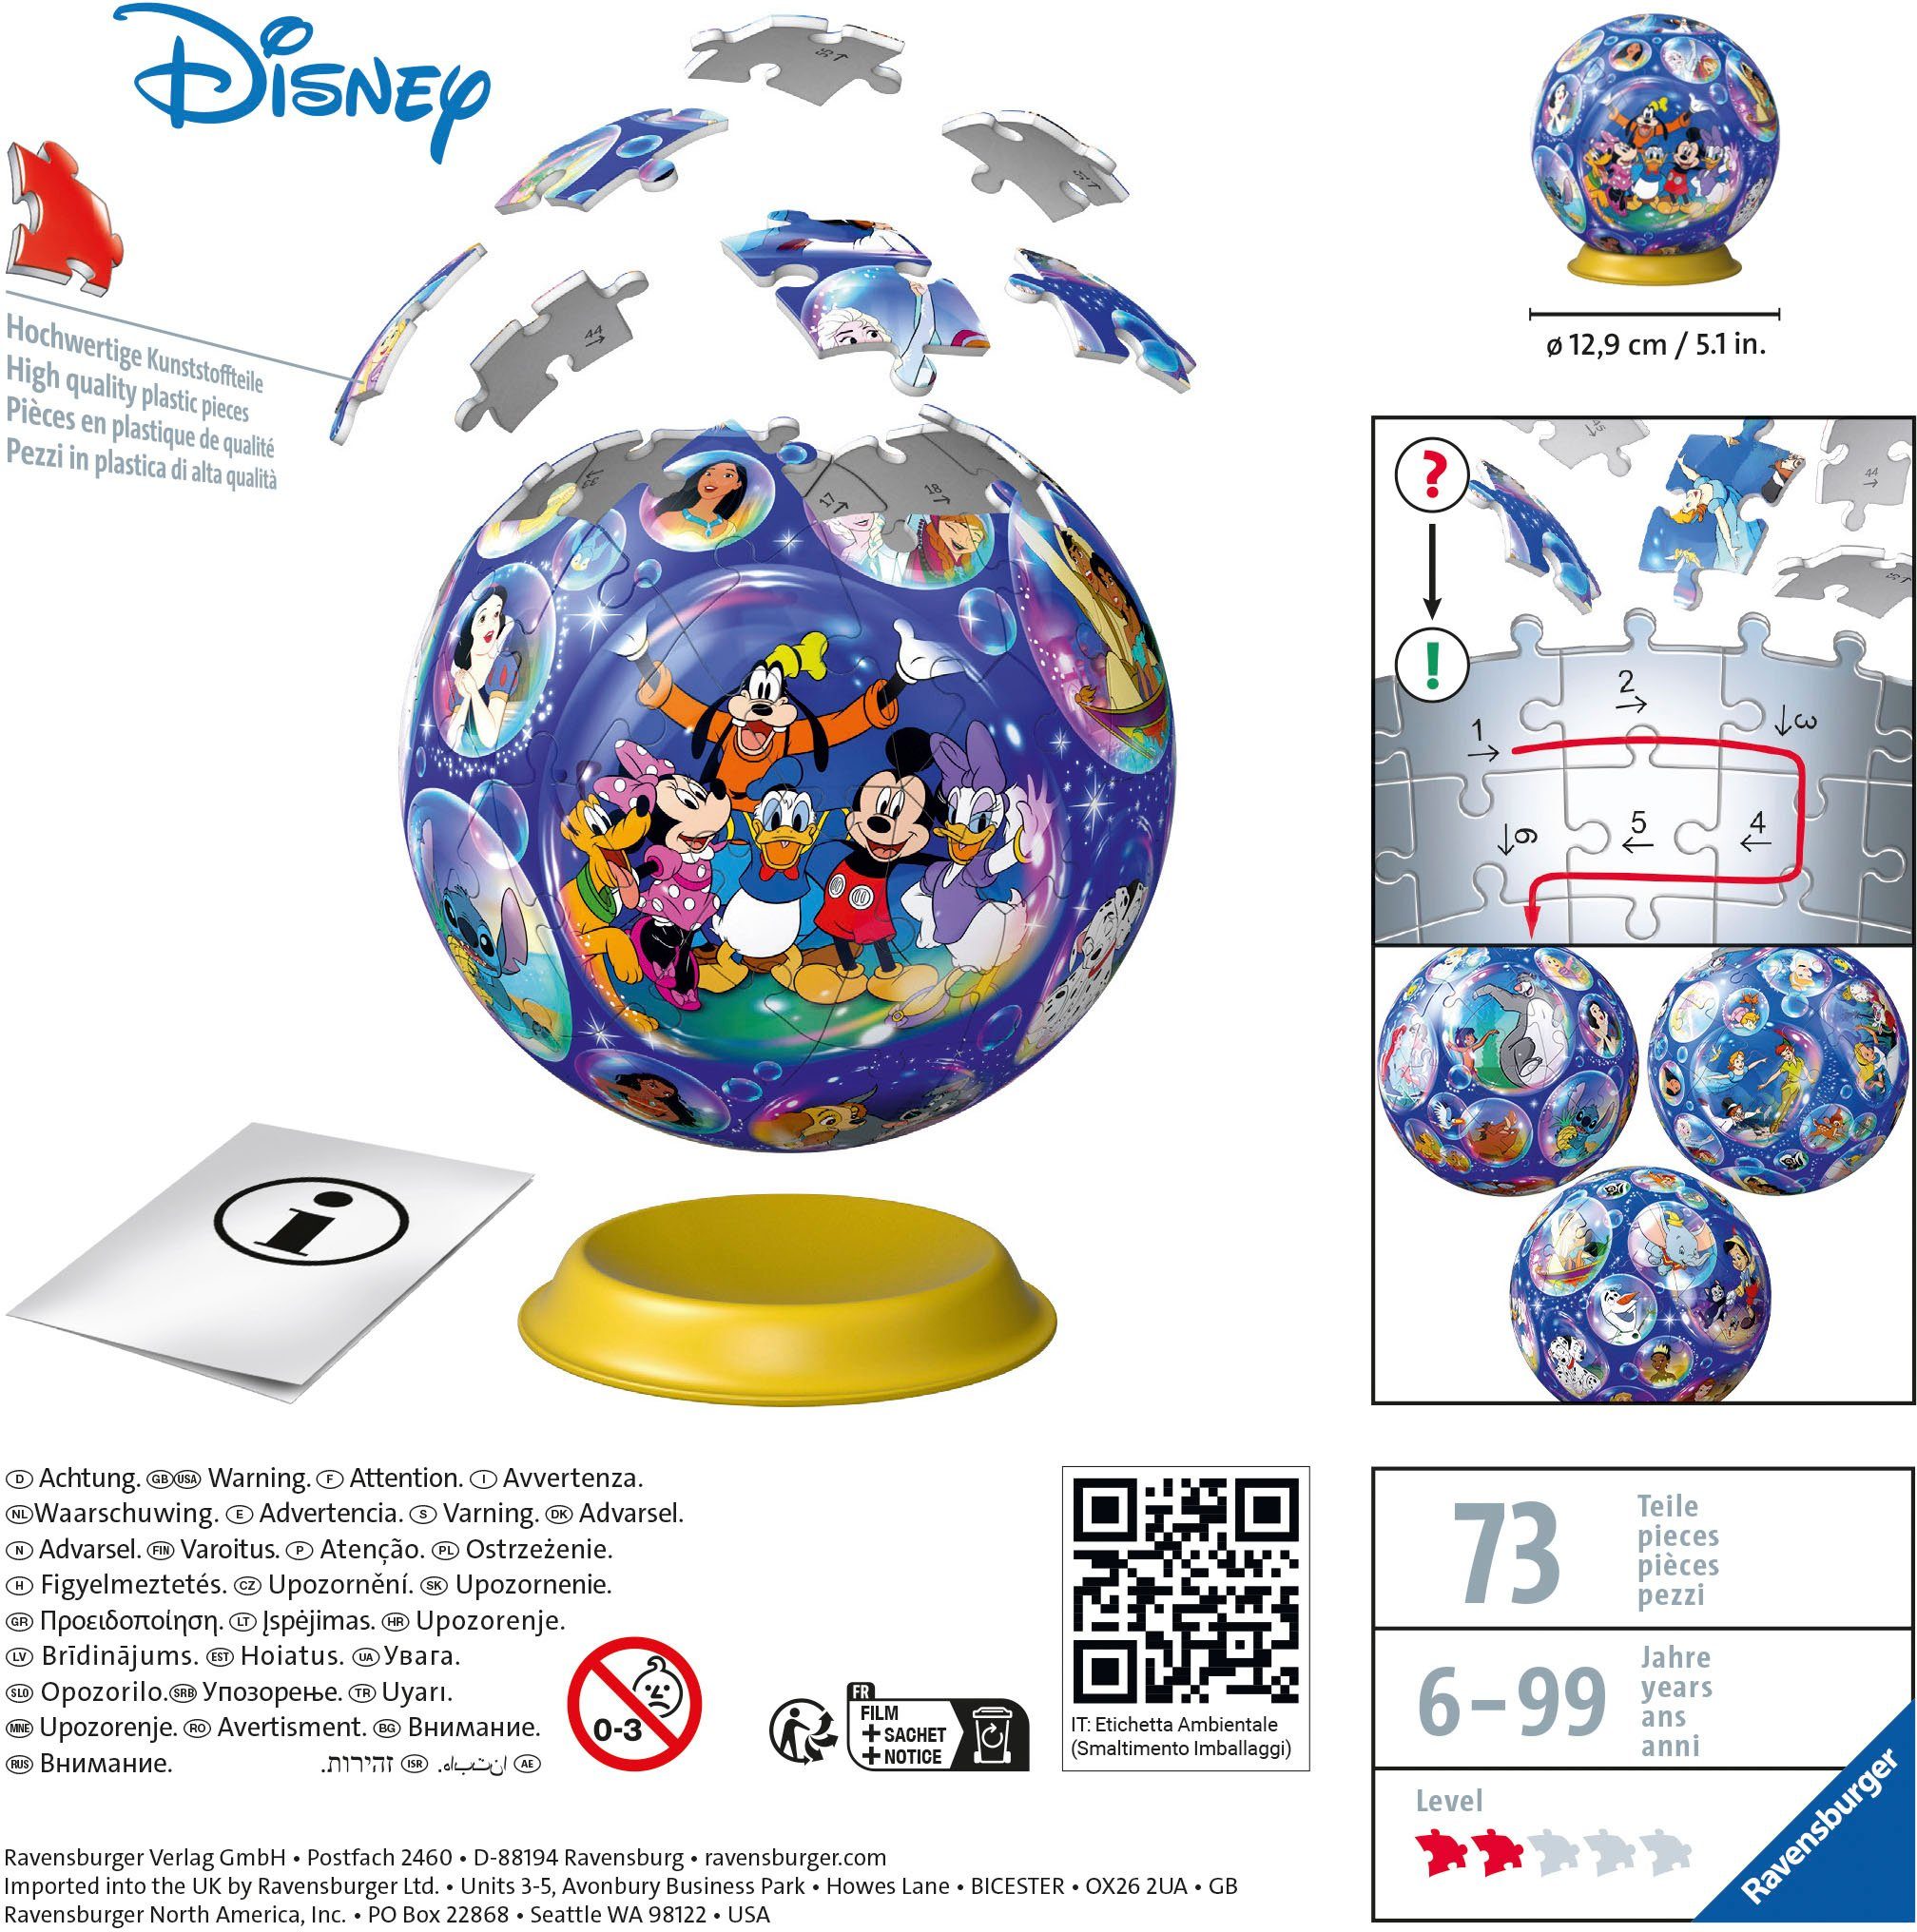 Ravensburger Puzzleball Disney FSC® in - weltweit; Europe Wald Made schützt - Puzzleteile, Charaktere, 72